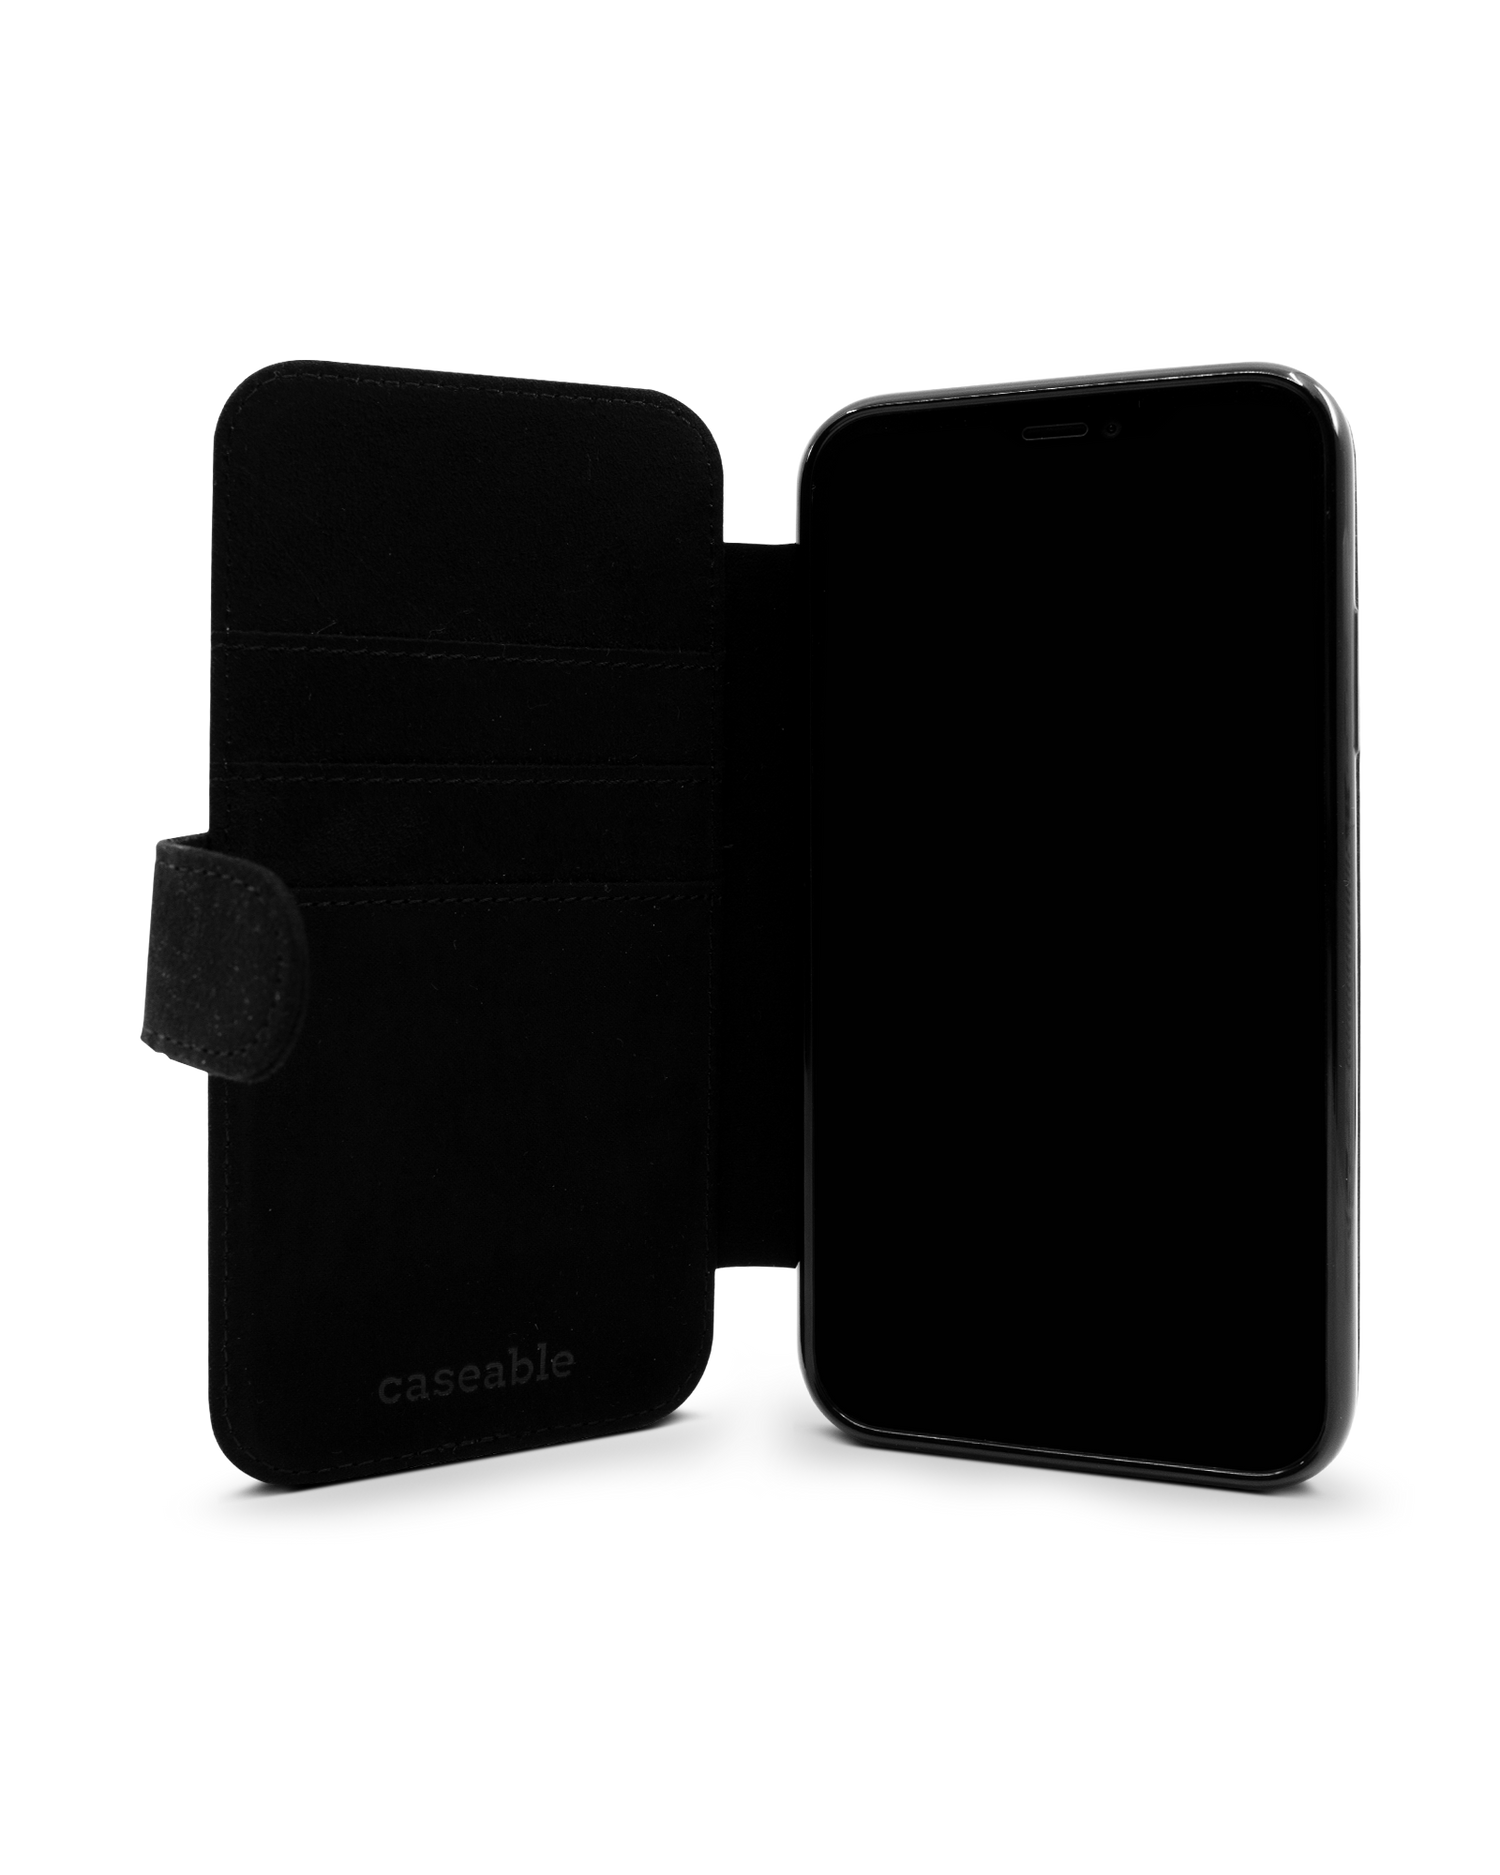 Leopard Skin Wallet Phone Case Apple iPhone XR: Inside View